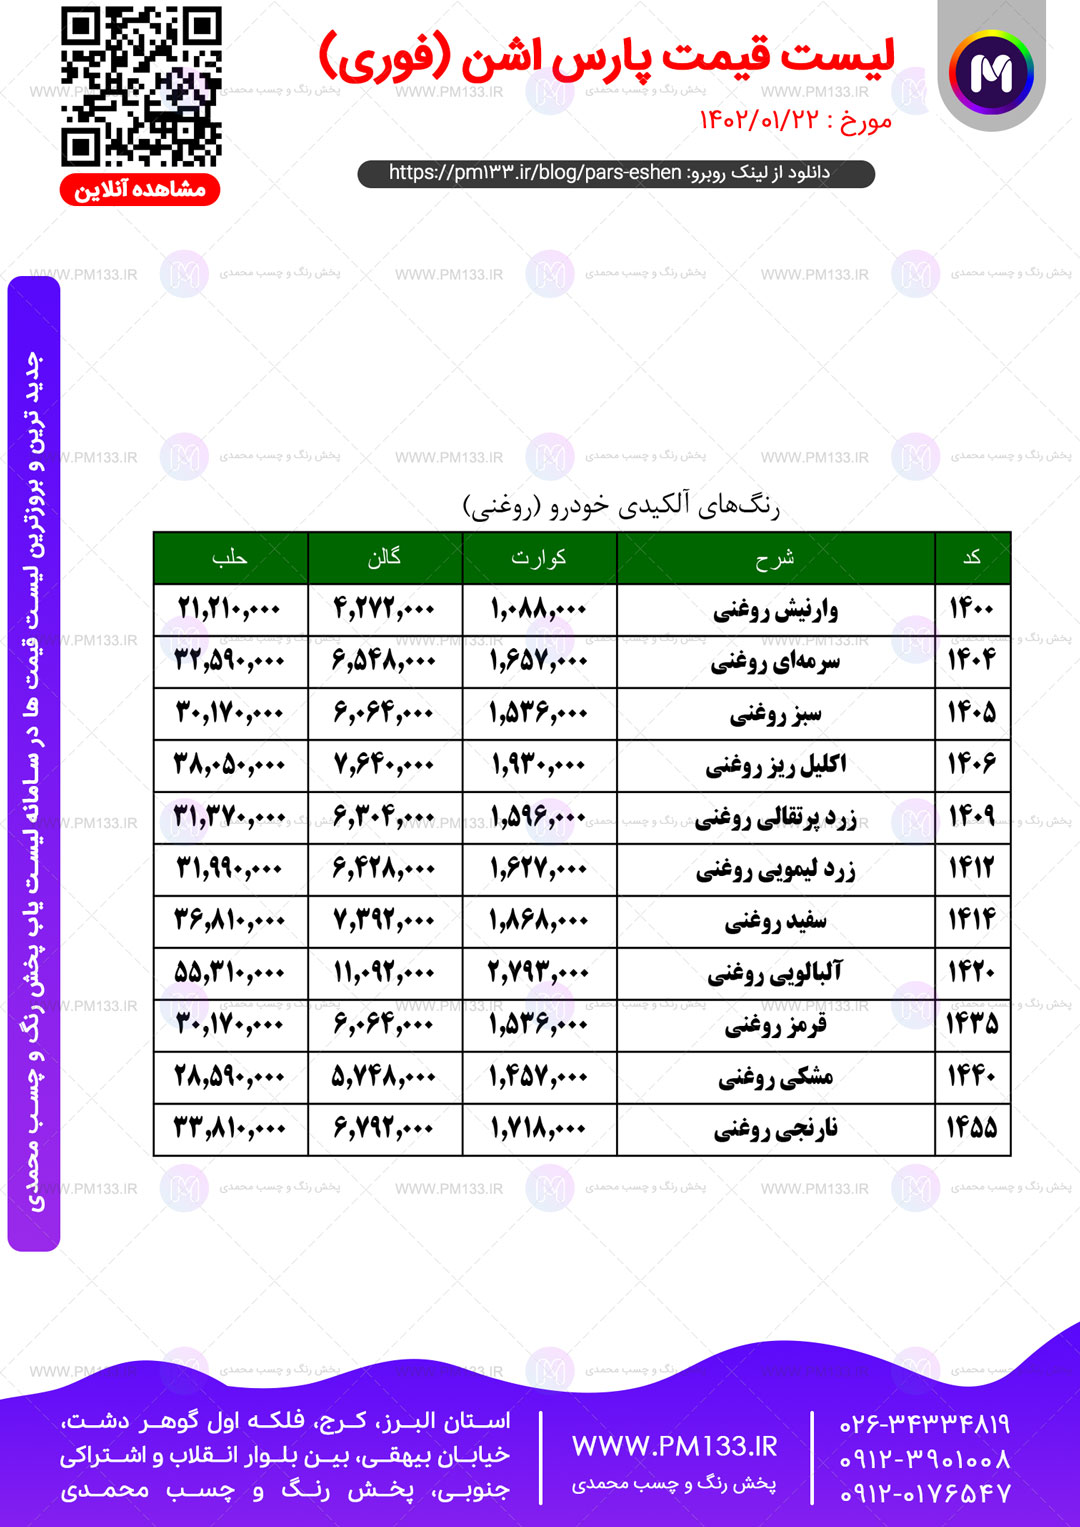 لیست قیمت پارس اشن مورخ 22-01-1402 صفحه5